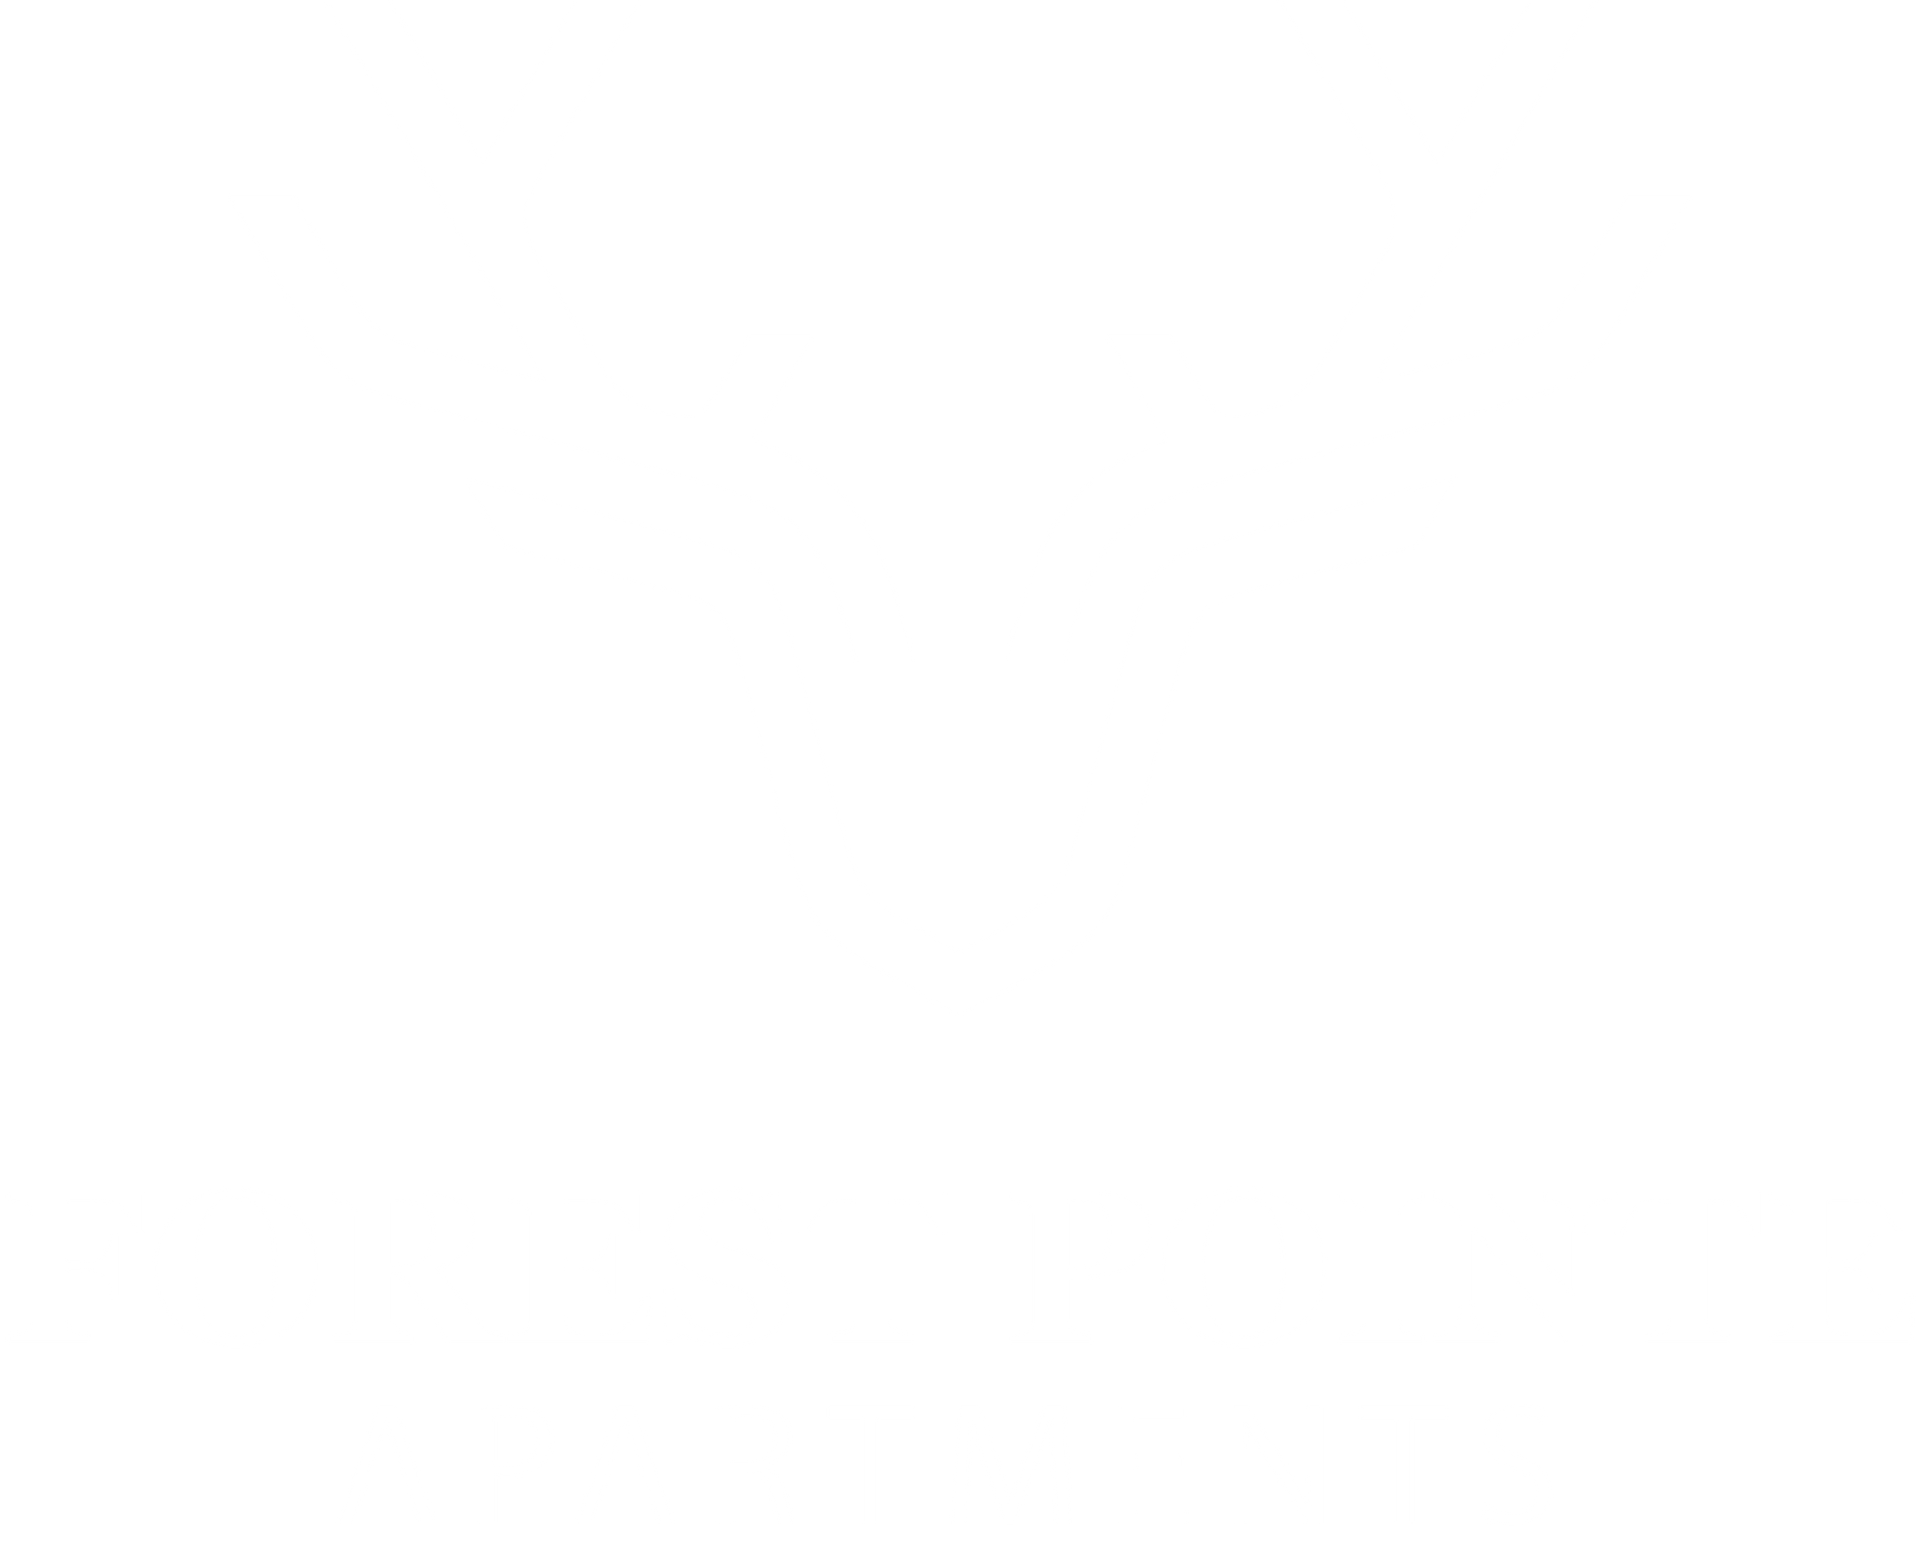 Forest Pointe White Logo